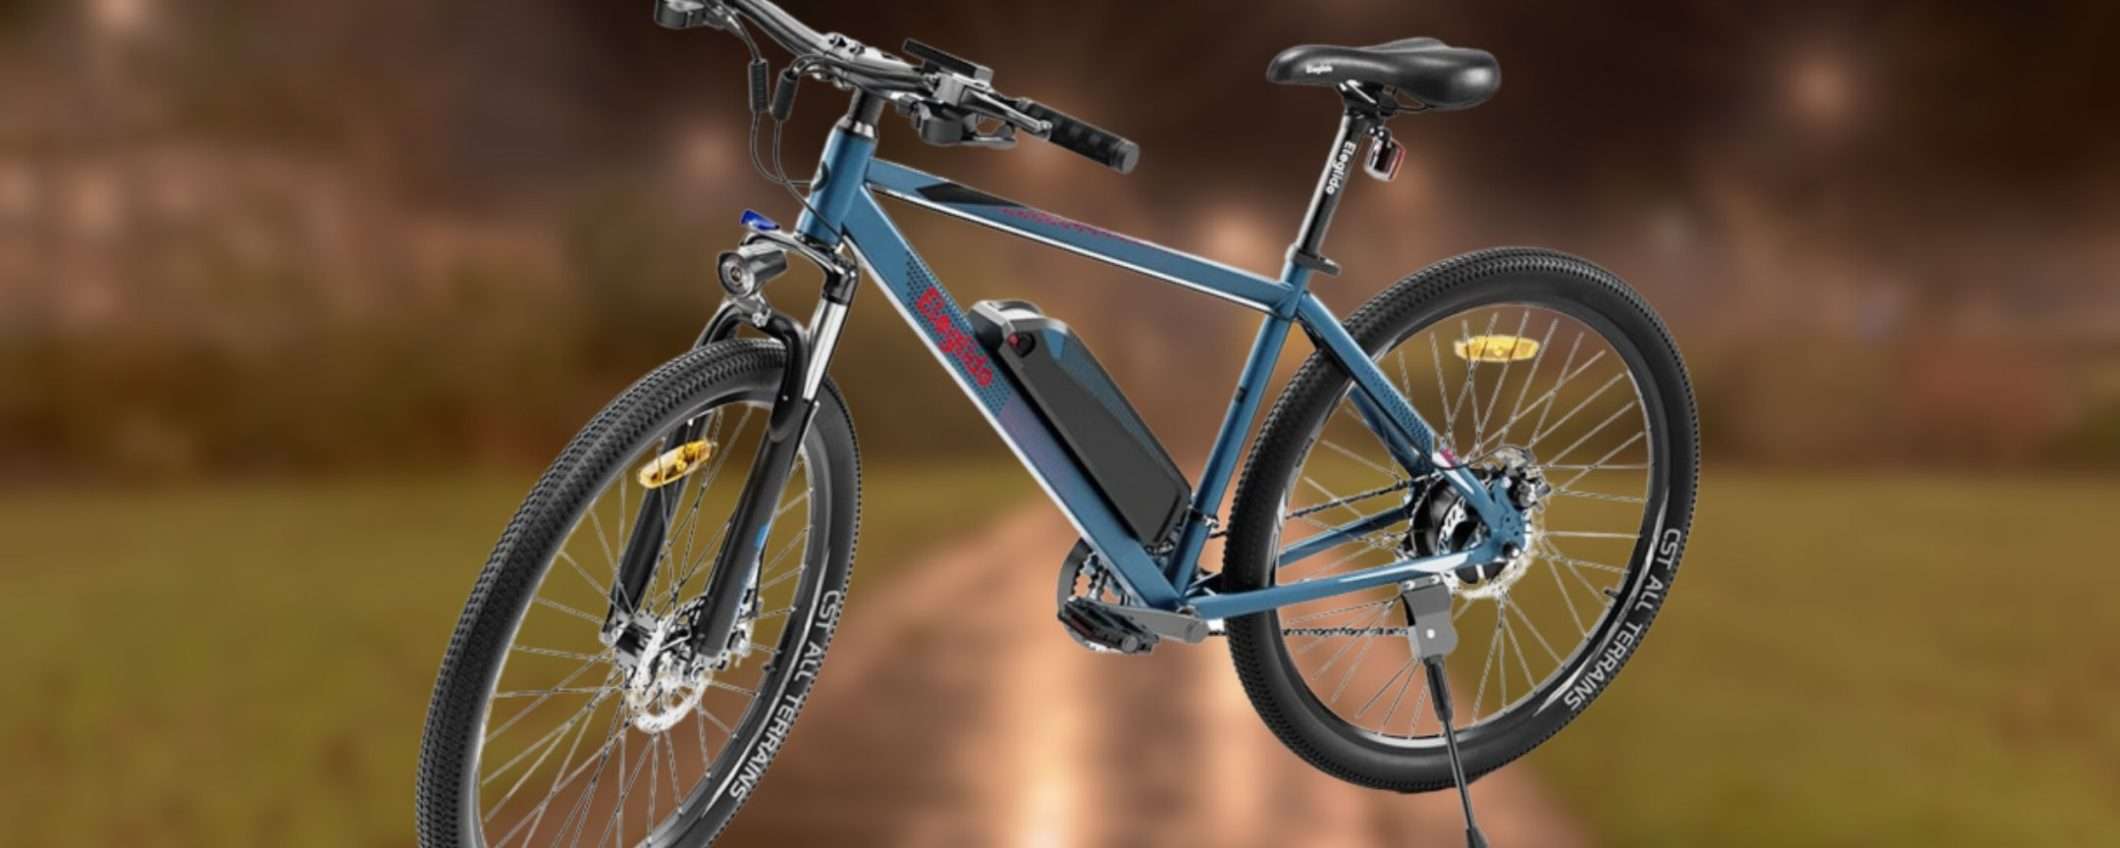 ELEGLIDE M1 è una bicicletta elettrica PAZZESCA: prezzo minuscolo (589€)